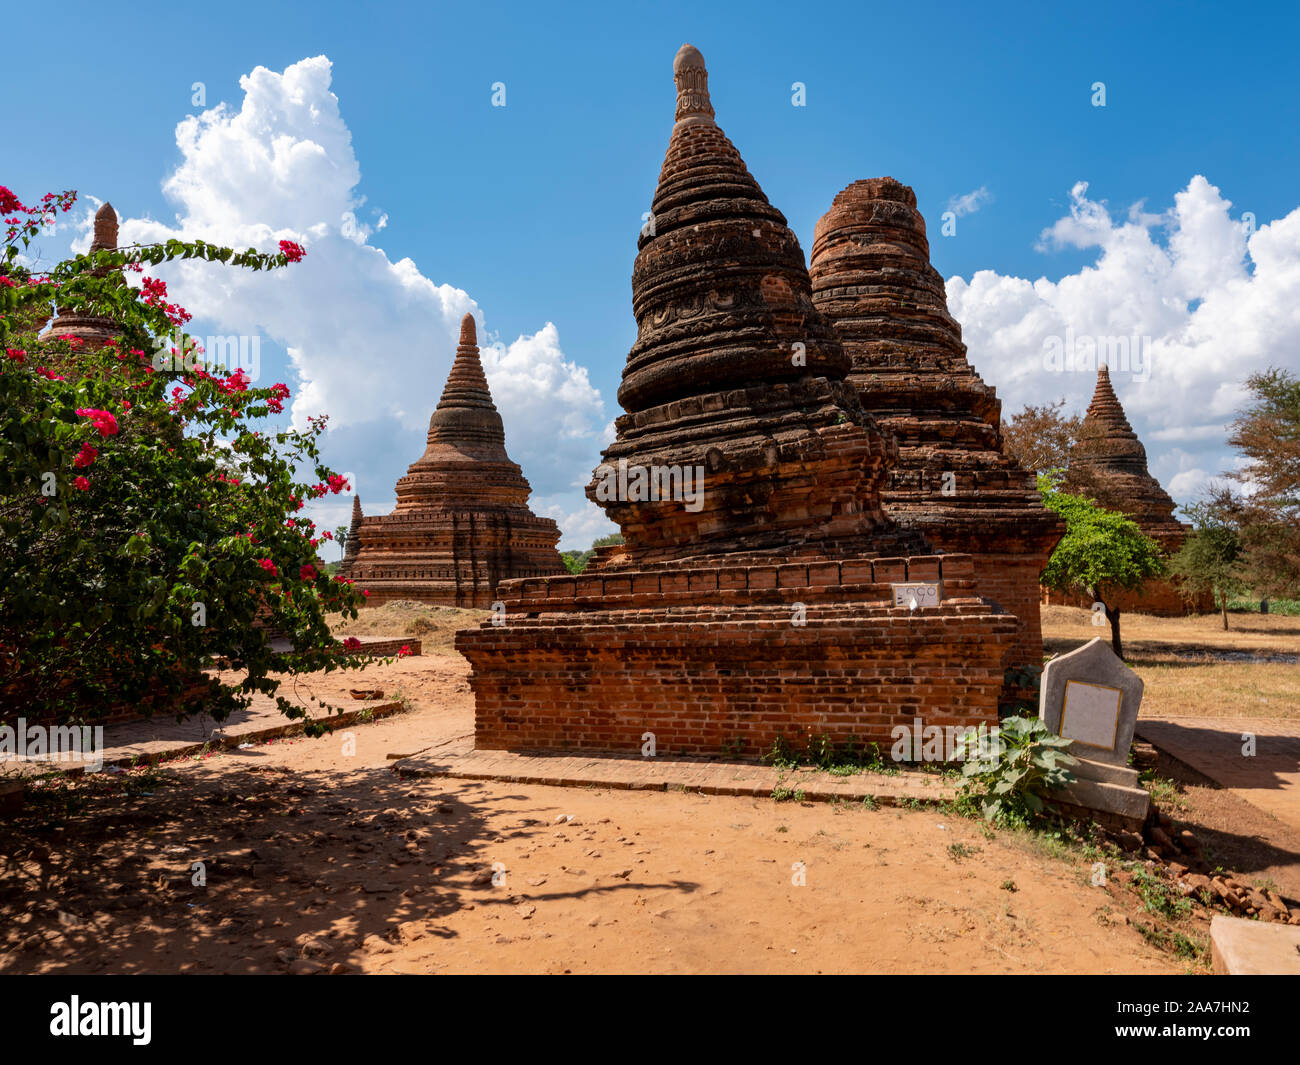 La zone archéologique et des complexes de temples anciens Bagan (Pagan), le Myanmar (Birmanie) de la 9ème-13ème siècles, maintenant un site du patrimoine mondial de l'UNESCO Banque D'Images